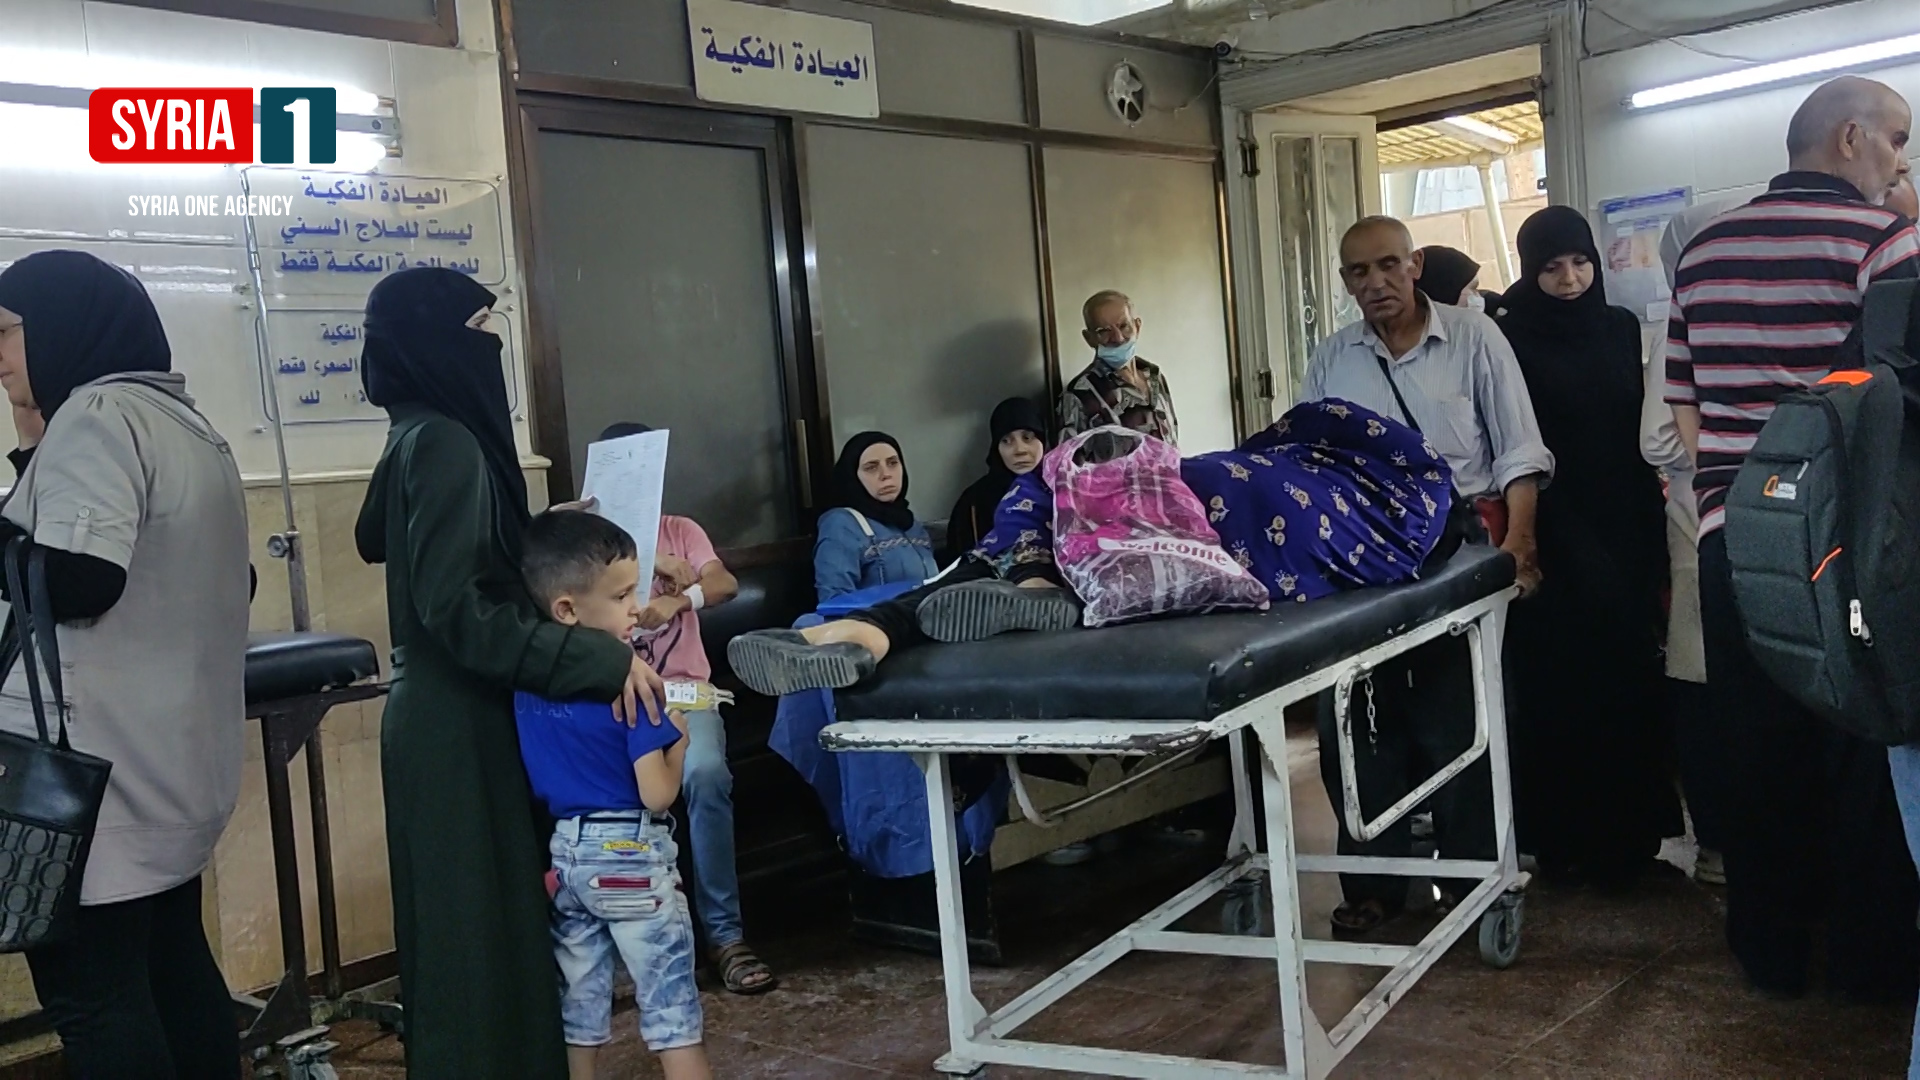 مرض "الكوليرا" يتفشى في سوريا ويحصد أرواح